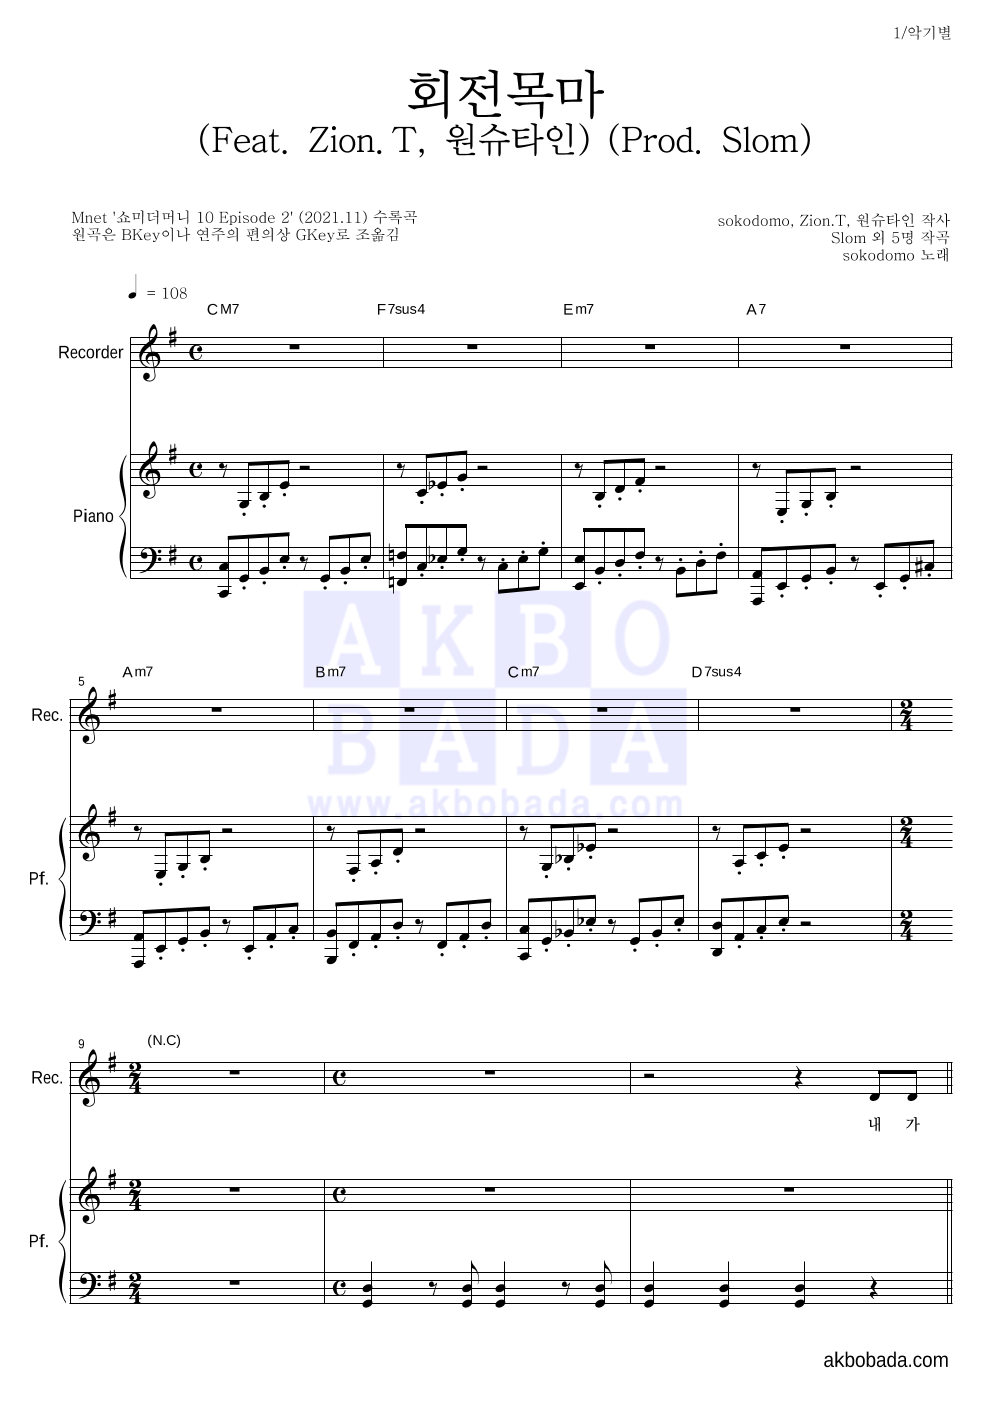 sokodomo - 회전목마 (Feat. Zion.T, 원슈타인) (Prod. Slom) 리코더&피아노 악보 